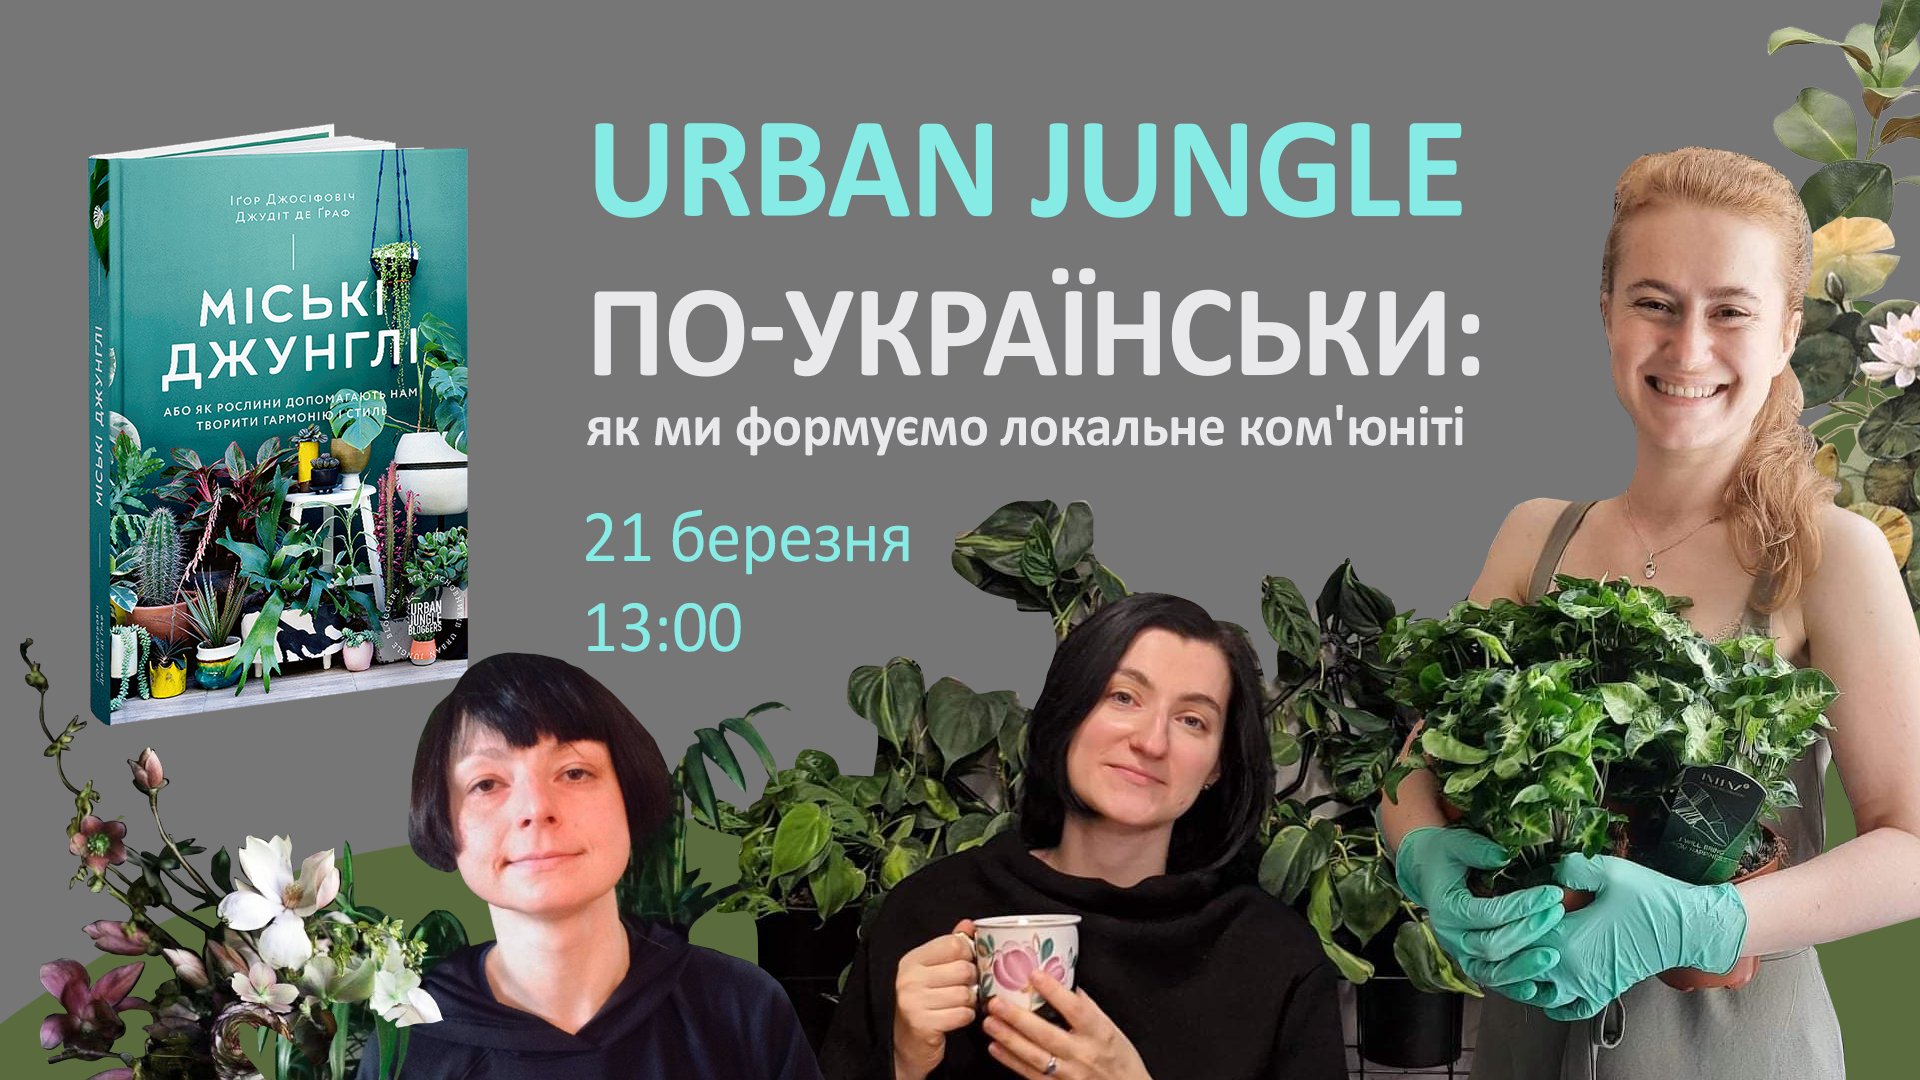 Urban jungle по-українськи: як ми формуємо локальне ком'юніті